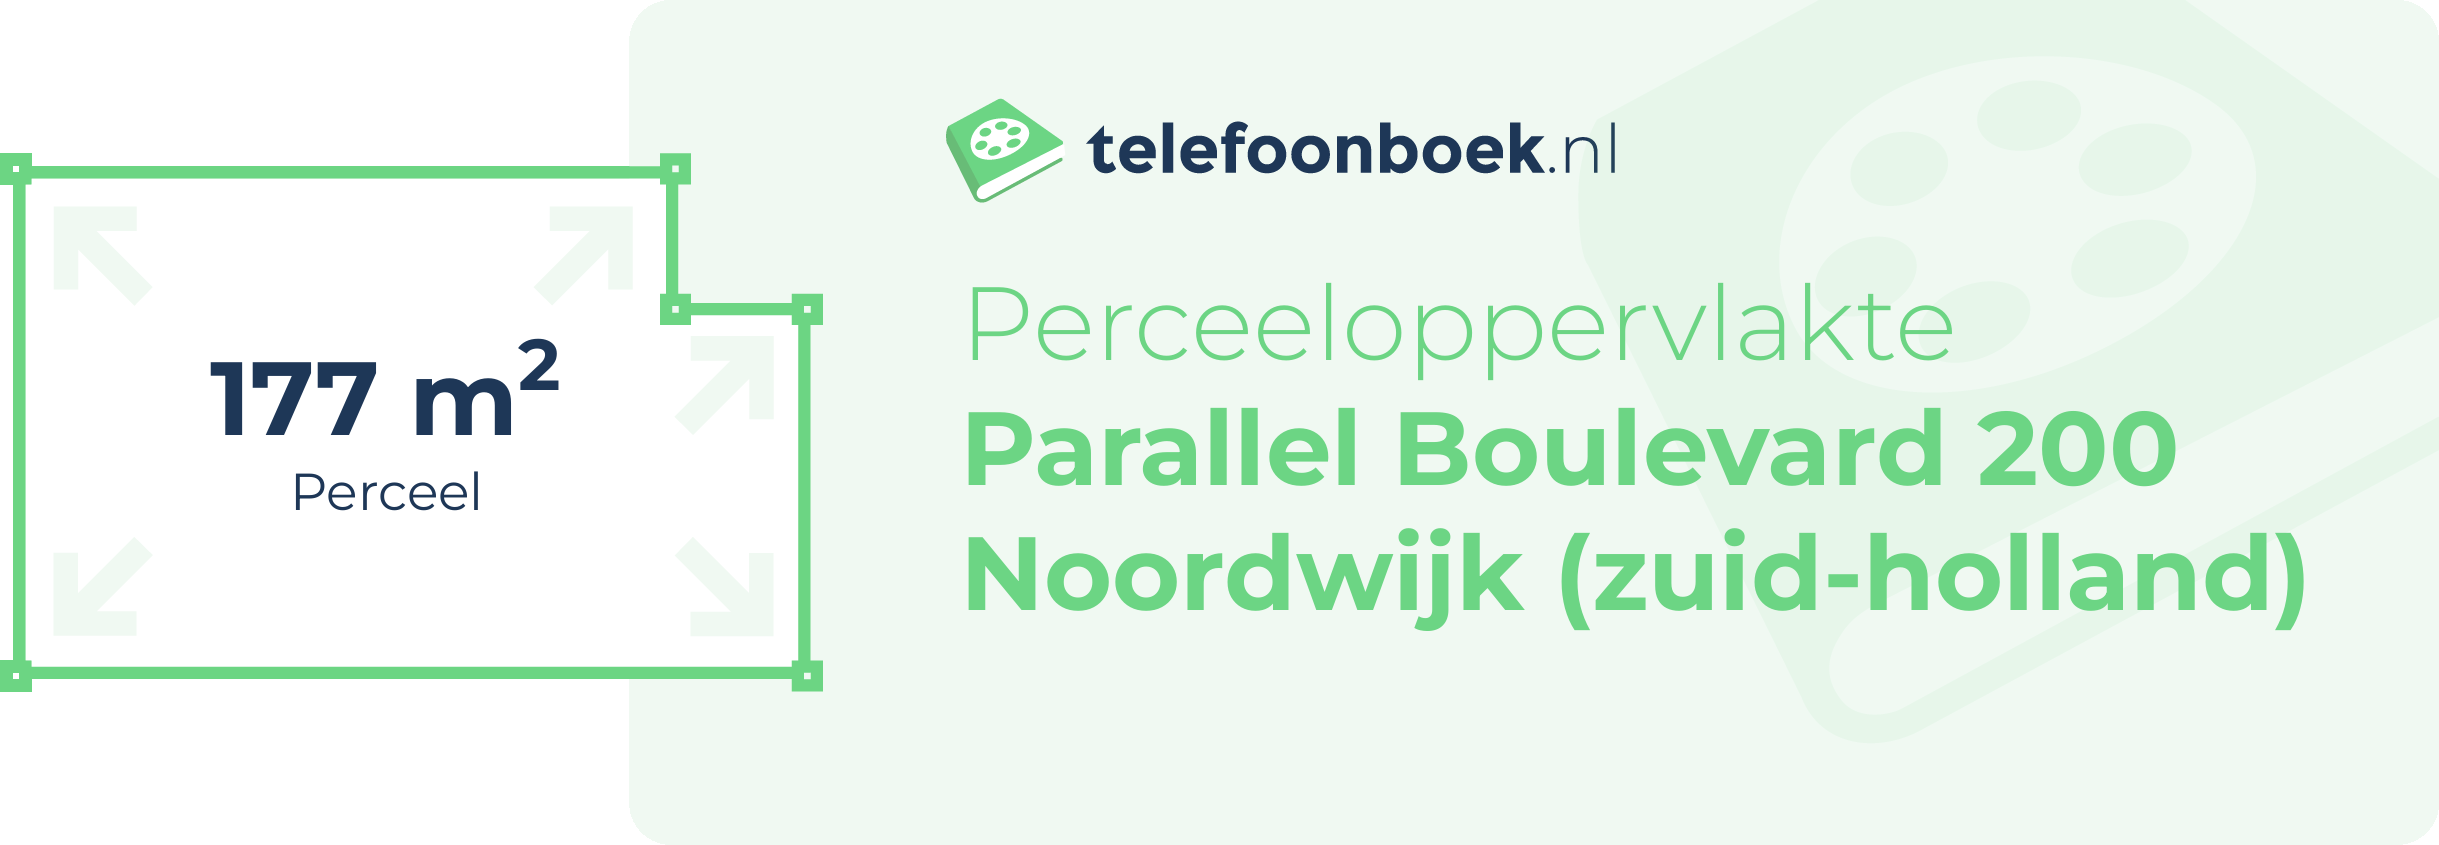 Perceeloppervlakte Parallel Boulevard 200 Noordwijk (Zuid-Holland)